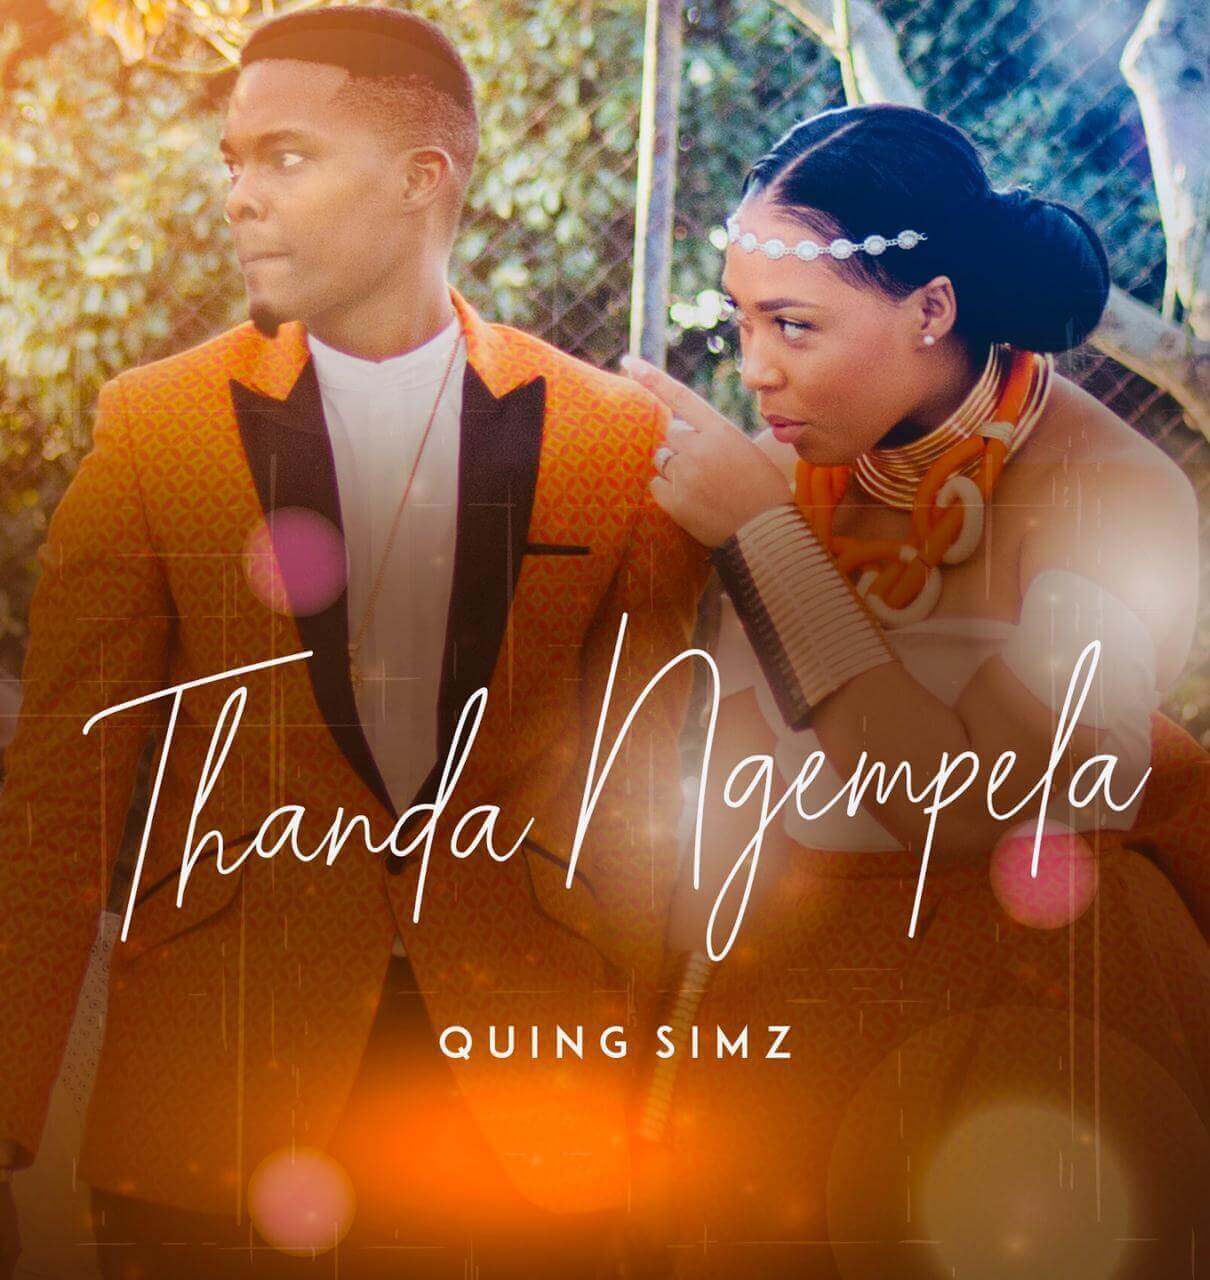 Simphiwe Ngema Quing Simz - Thanda Ngempela